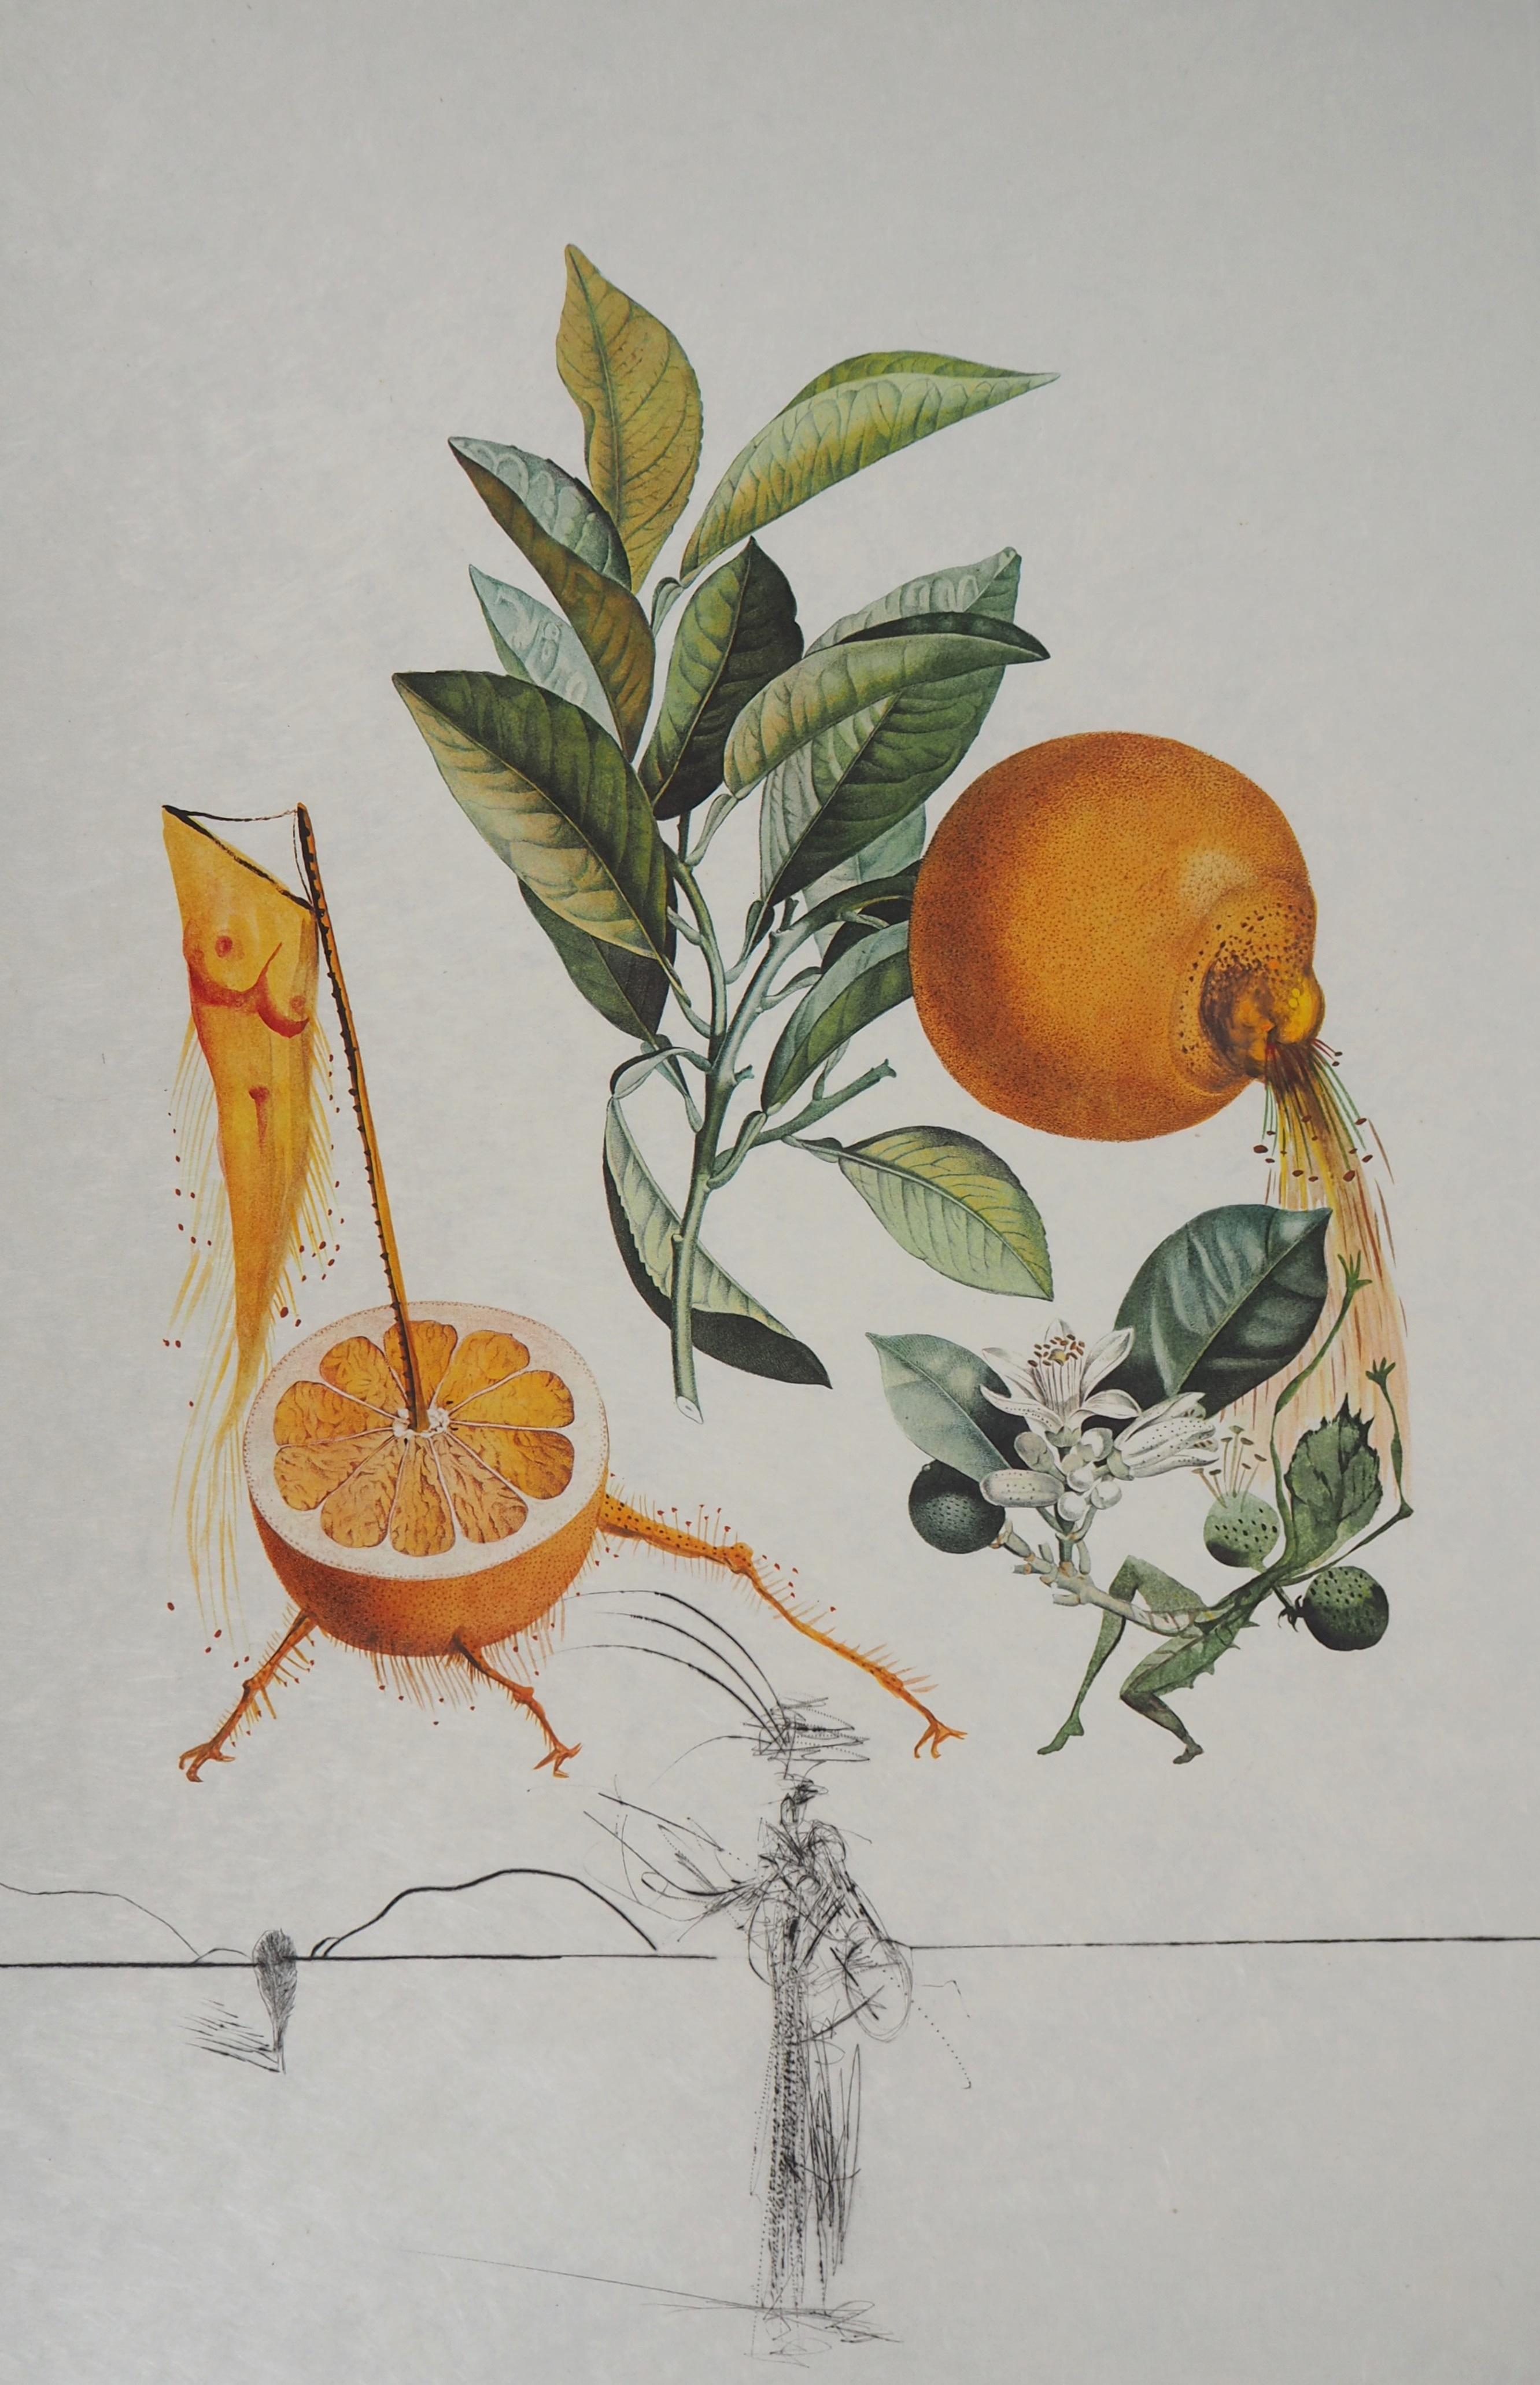 Flordali : Erotic Grapefruit - Original Handsigned Etching (Field #69-11I) - Print by Salvador Dalí